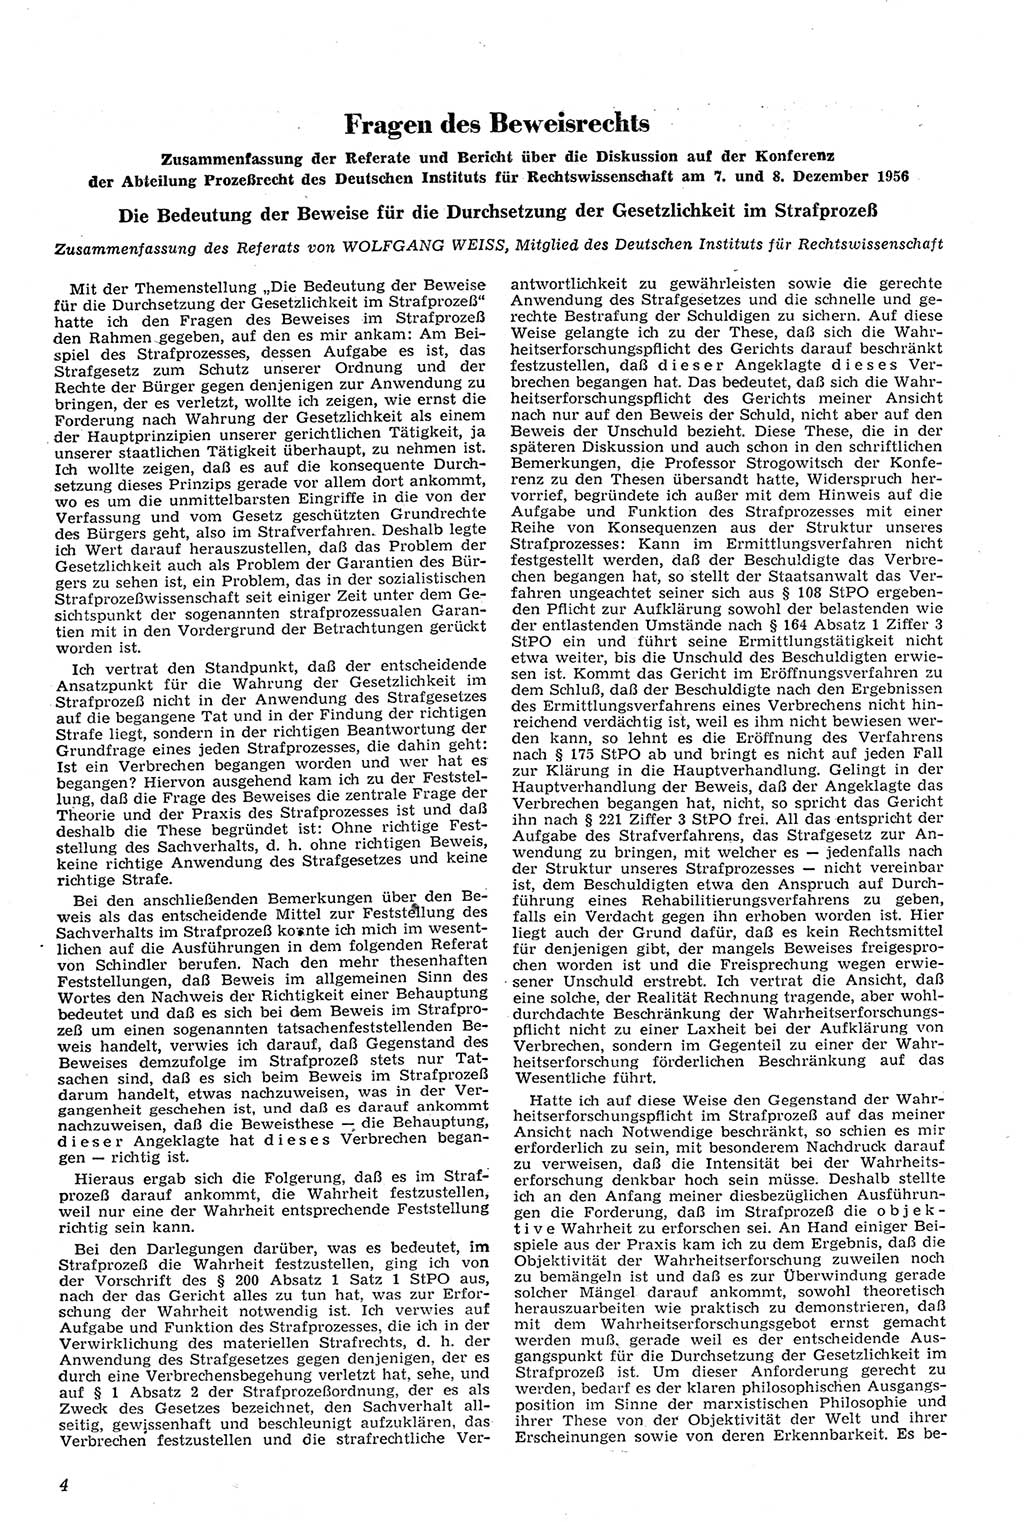 Neue Justiz (NJ), Zeitschrift für Recht und Rechtswissenschaft [Deutsche Demokratische Republik (DDR)], 11. Jahrgang 1957, Seite 4 (NJ DDR 1957, S. 4)